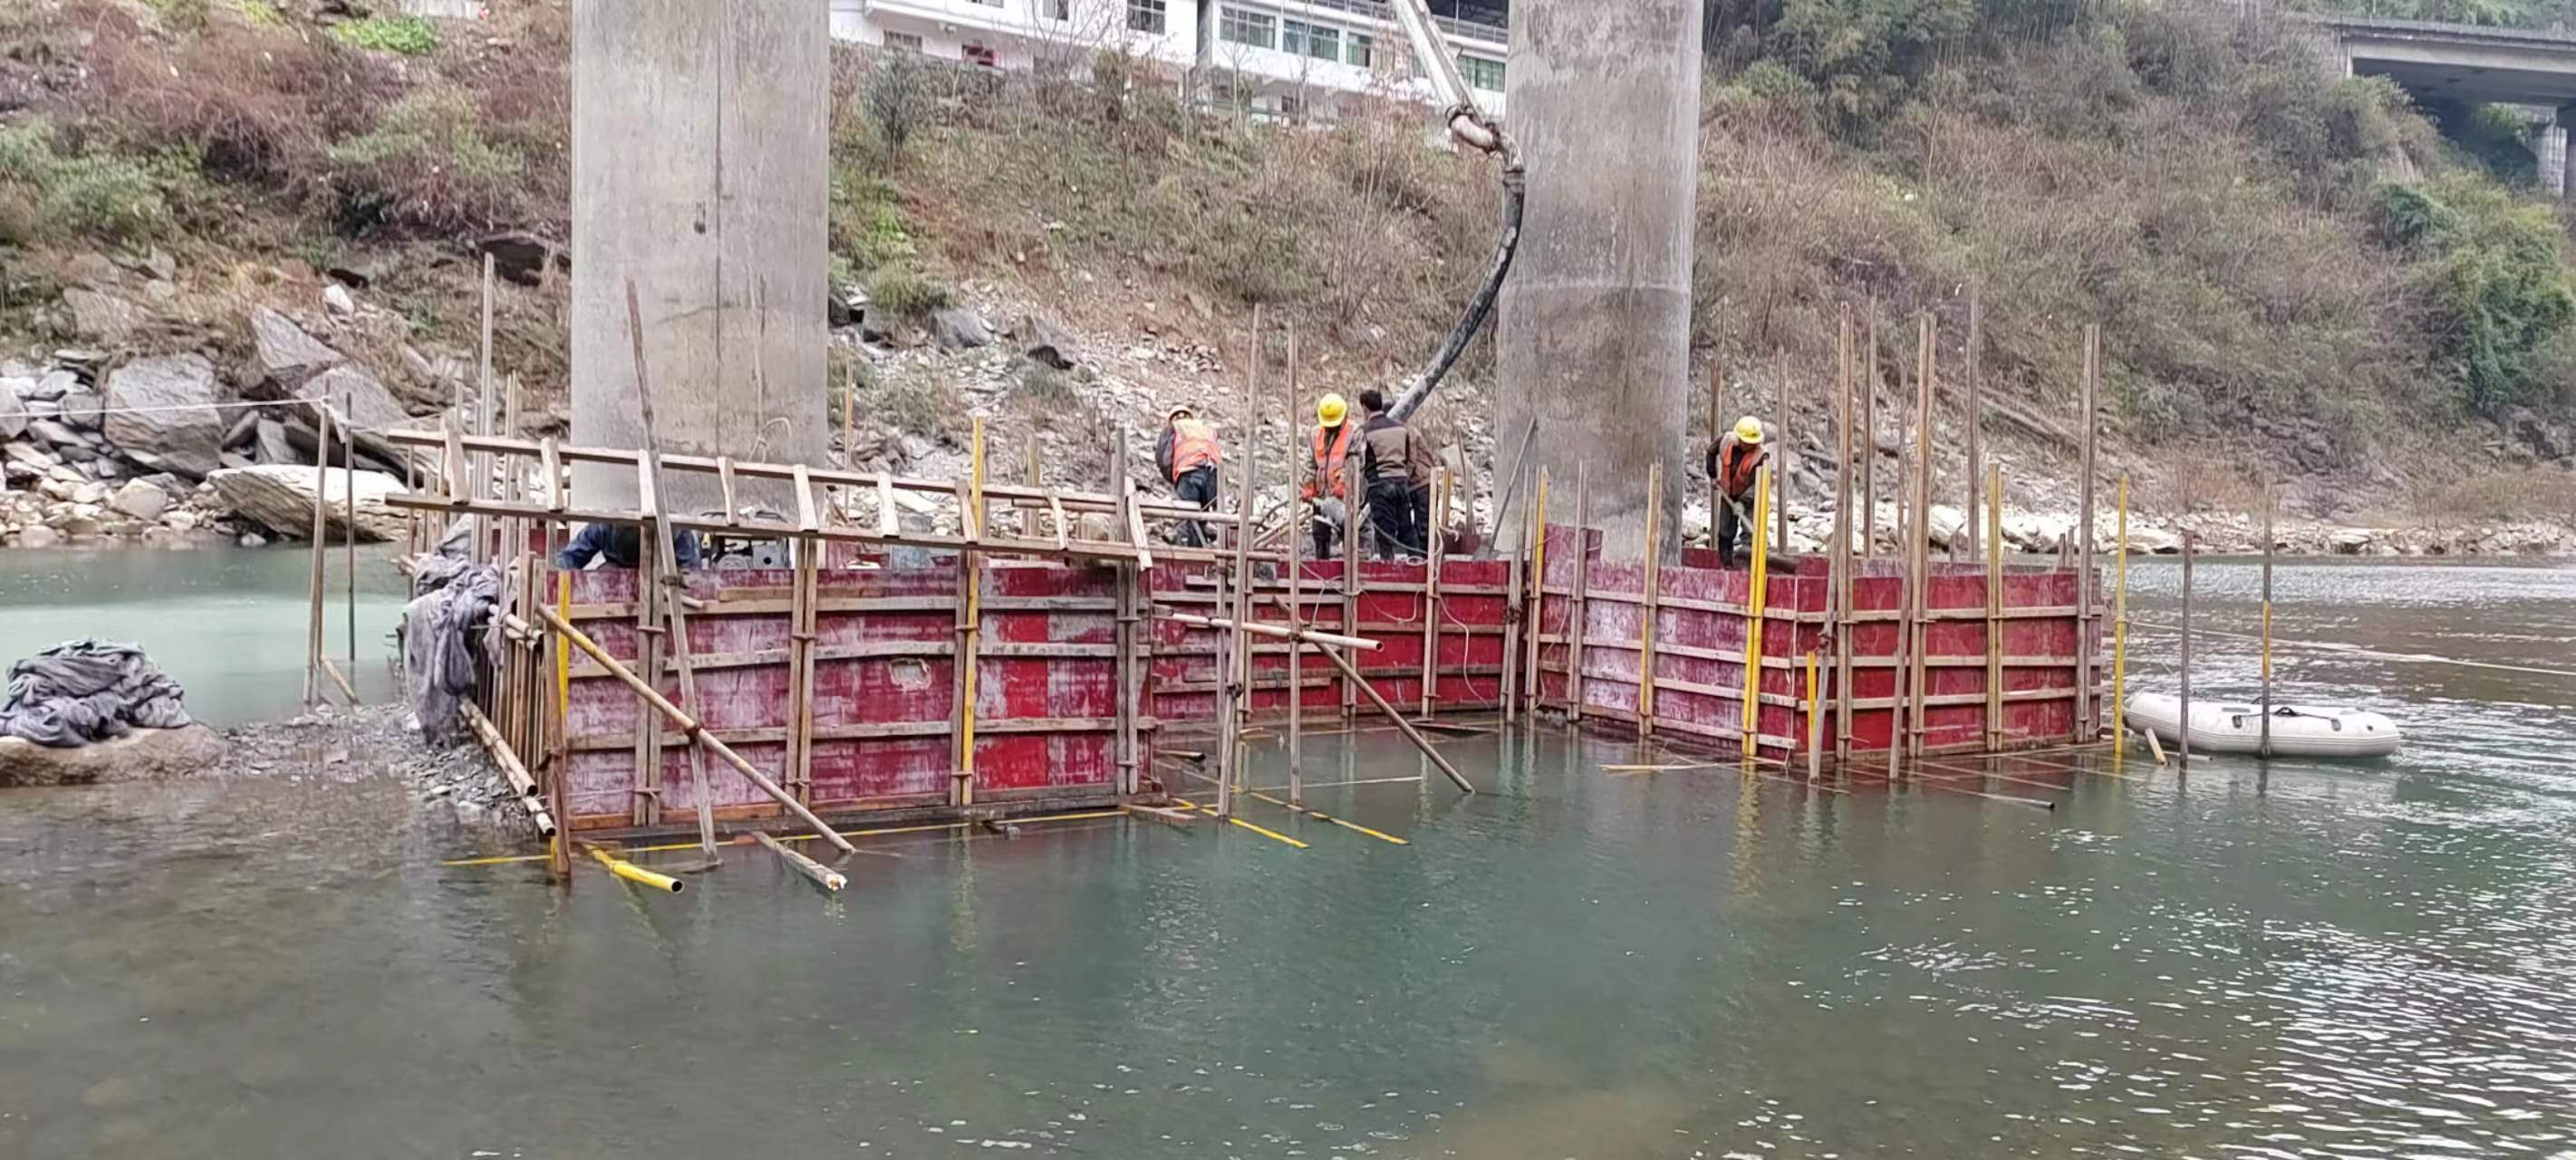 丰台水利工程施工中堤坝渗漏原因以及防渗加固技术